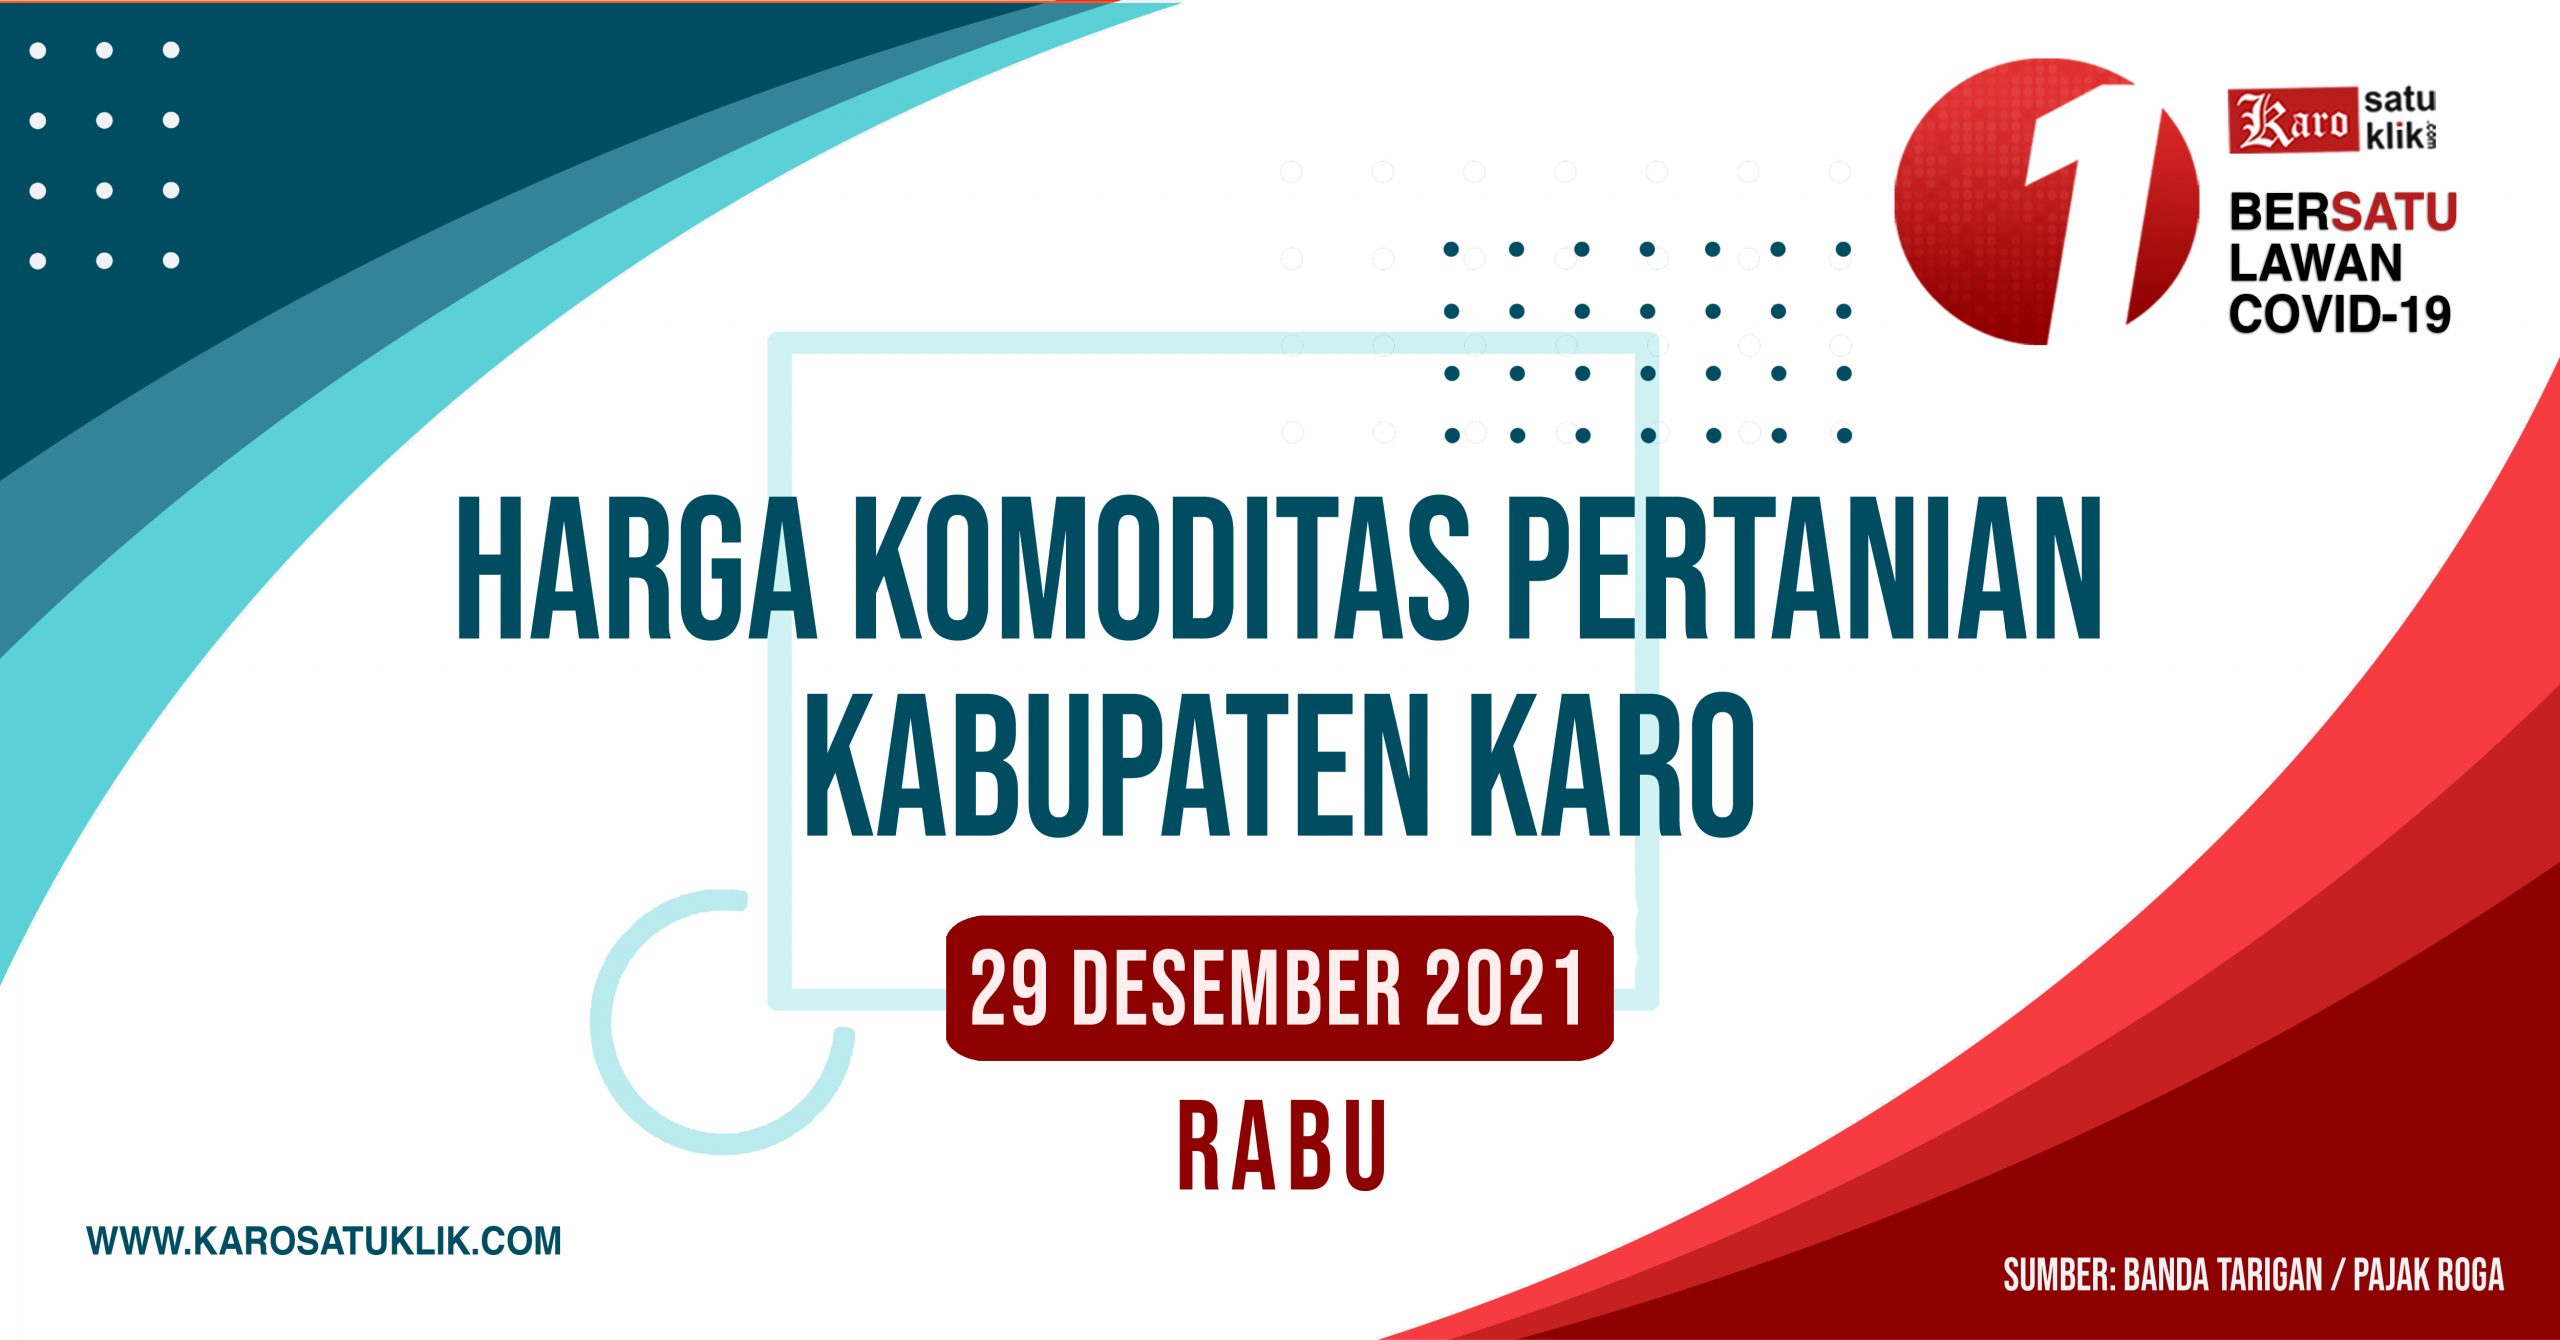 Daftar Harga Komoditas Pertanian Kabupaten Karo, 29 Desember 2021